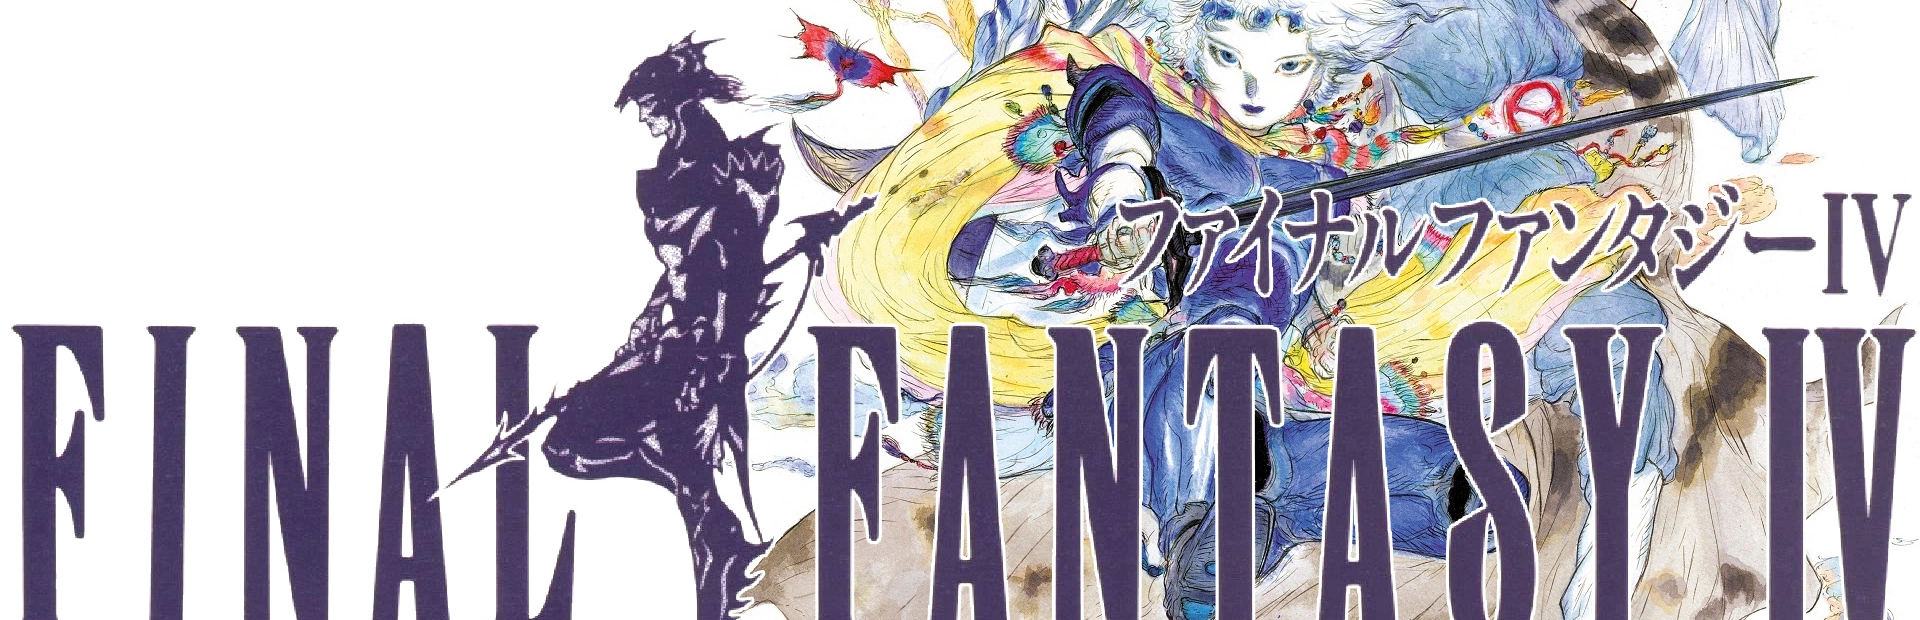 Final Fantasy IV.banner1